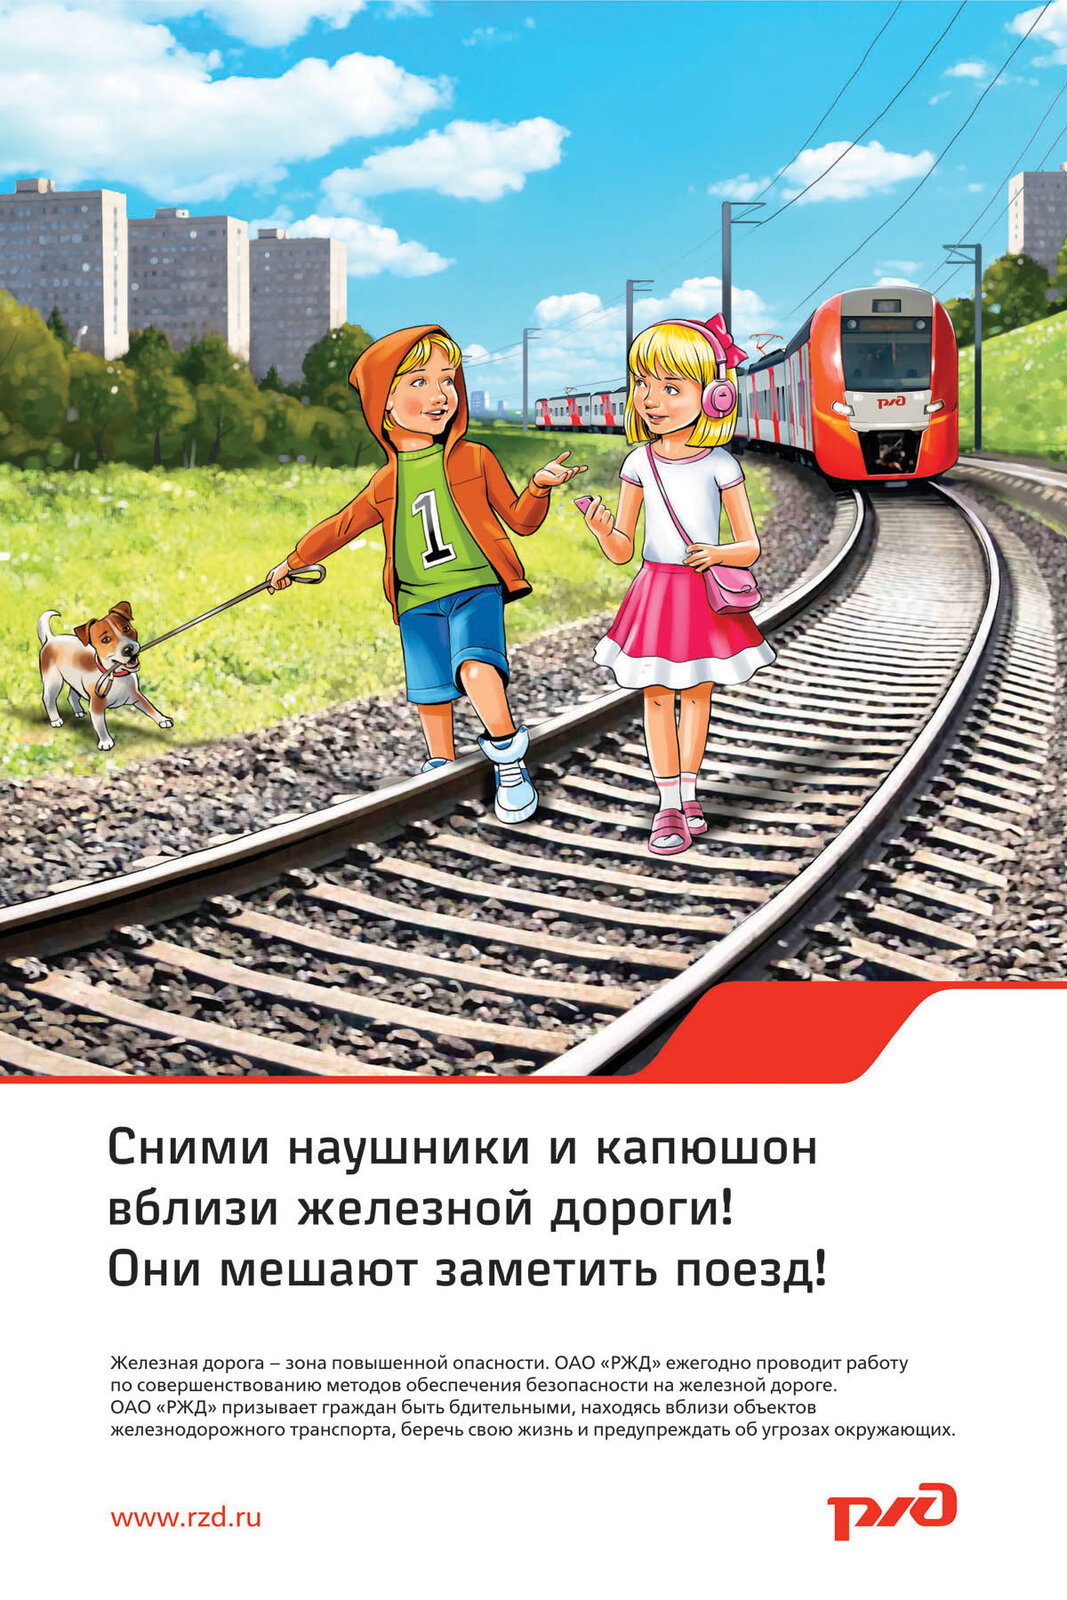 Безопасное поведение детей на Железнодорожном транспорте